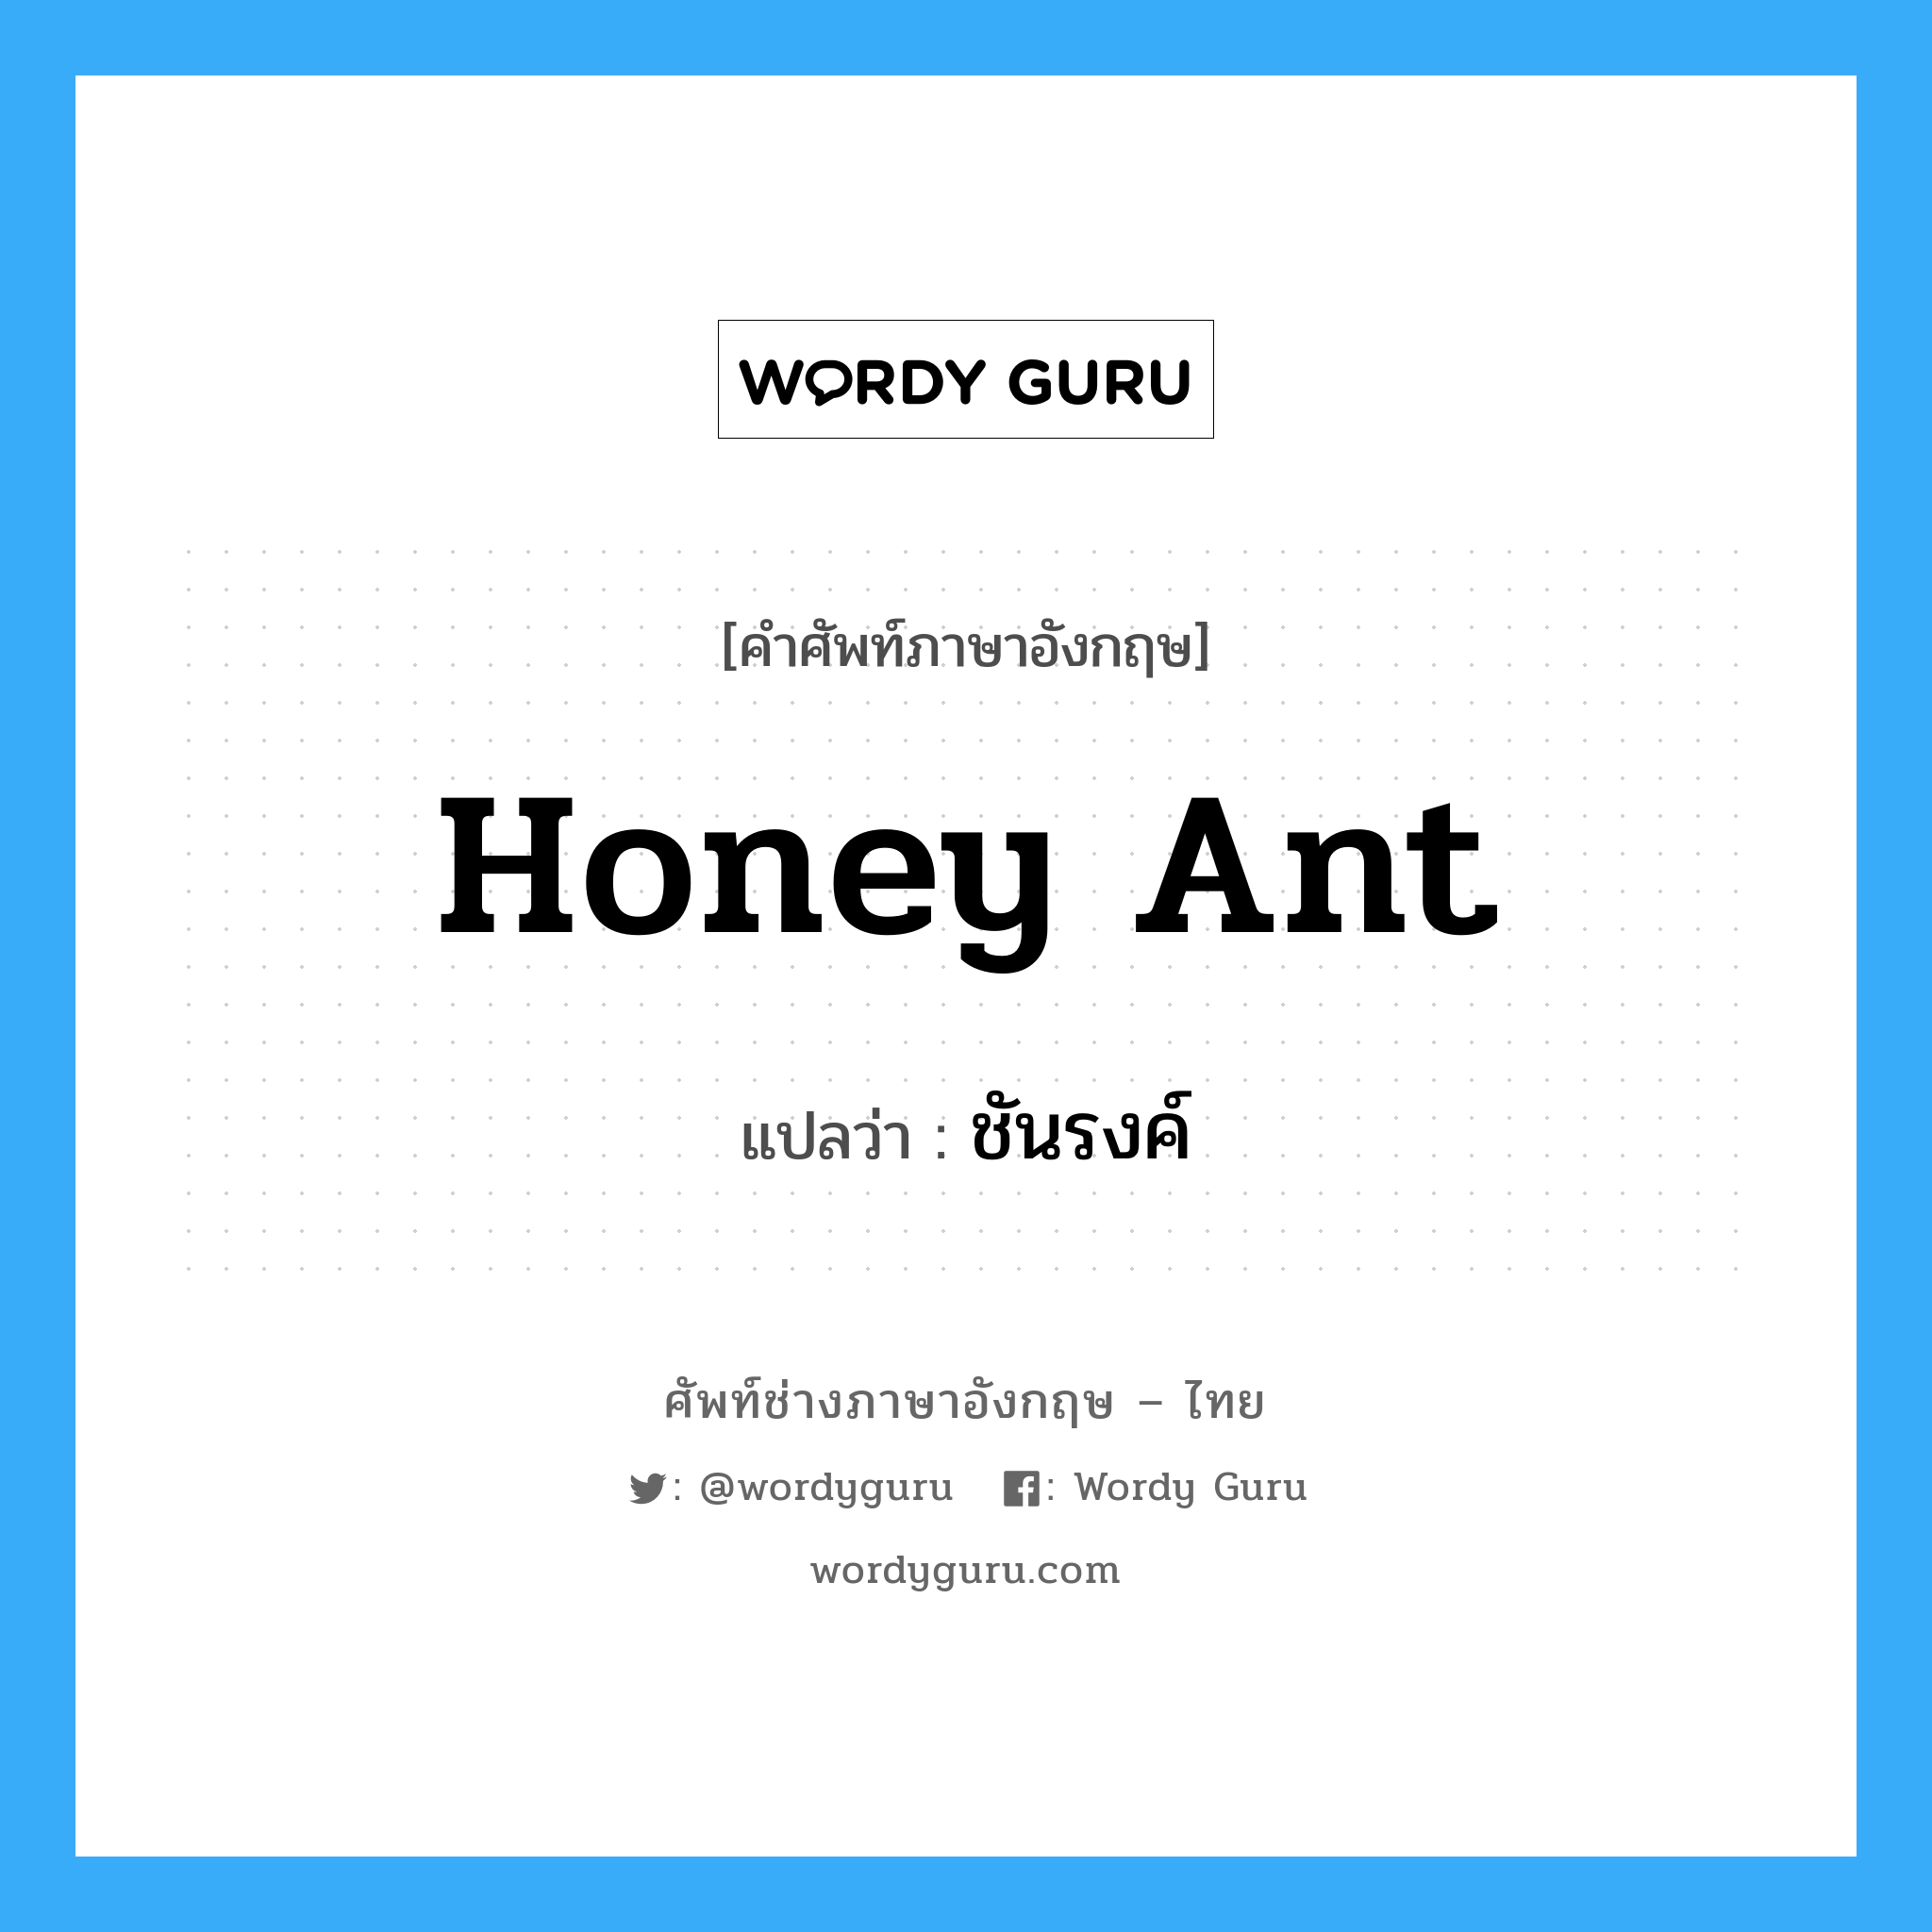 ชันรงค์ ภาษาอังกฤษ?, คำศัพท์ช่างภาษาอังกฤษ - ไทย ชันรงค์ คำศัพท์ภาษาอังกฤษ ชันรงค์ แปลว่า honey ant